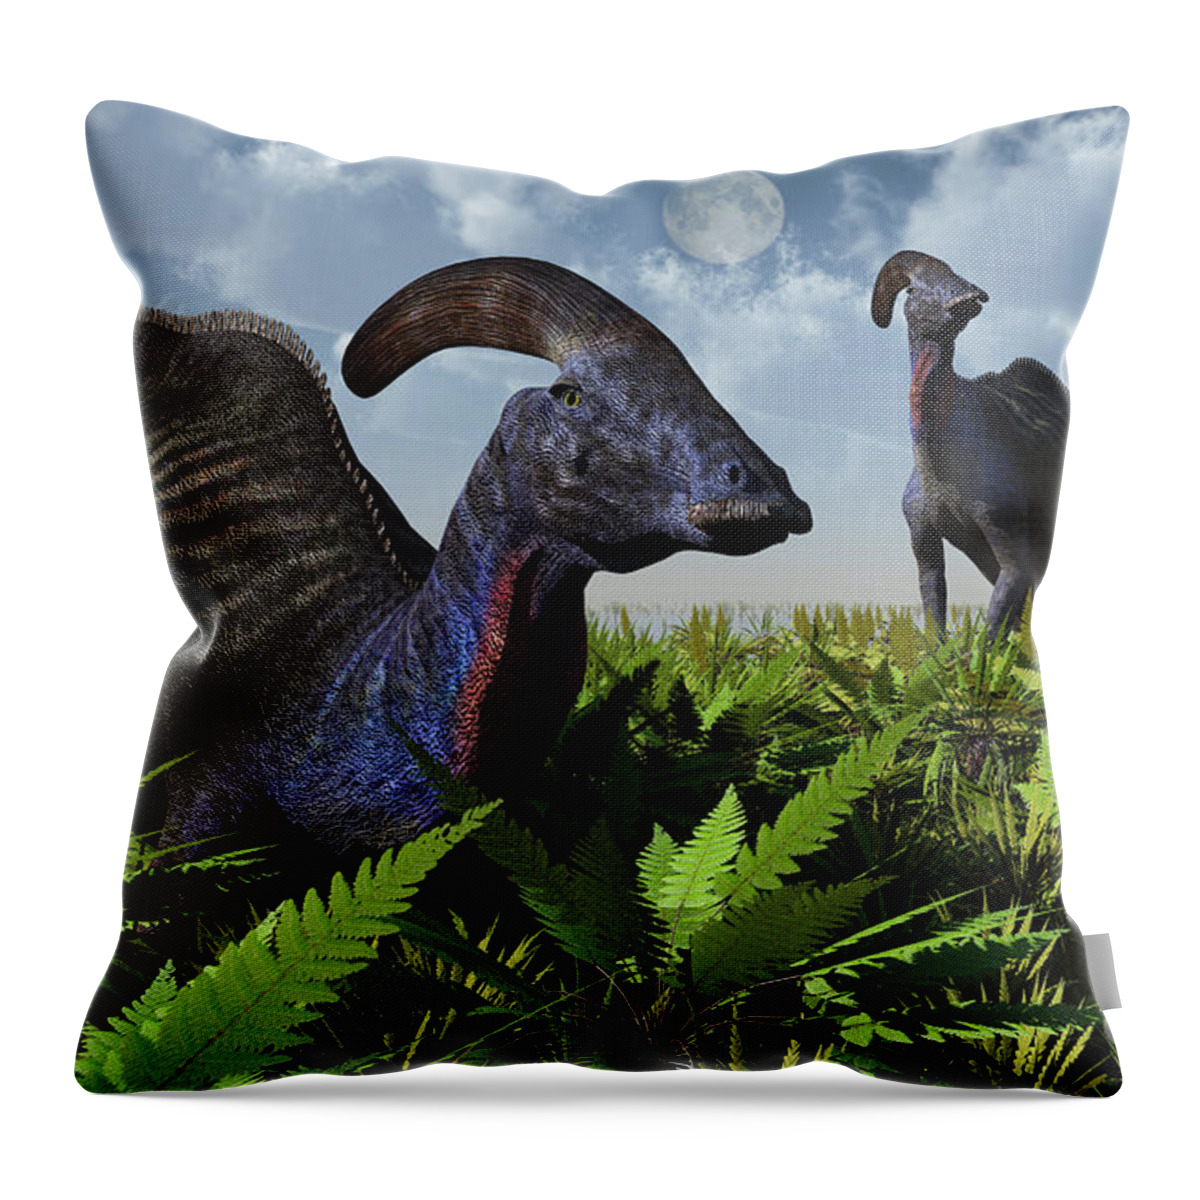 Artwork Throw Pillow featuring the digital art A Pair Of Parasaurolophus Duckbill #1 by Mark Stevenson